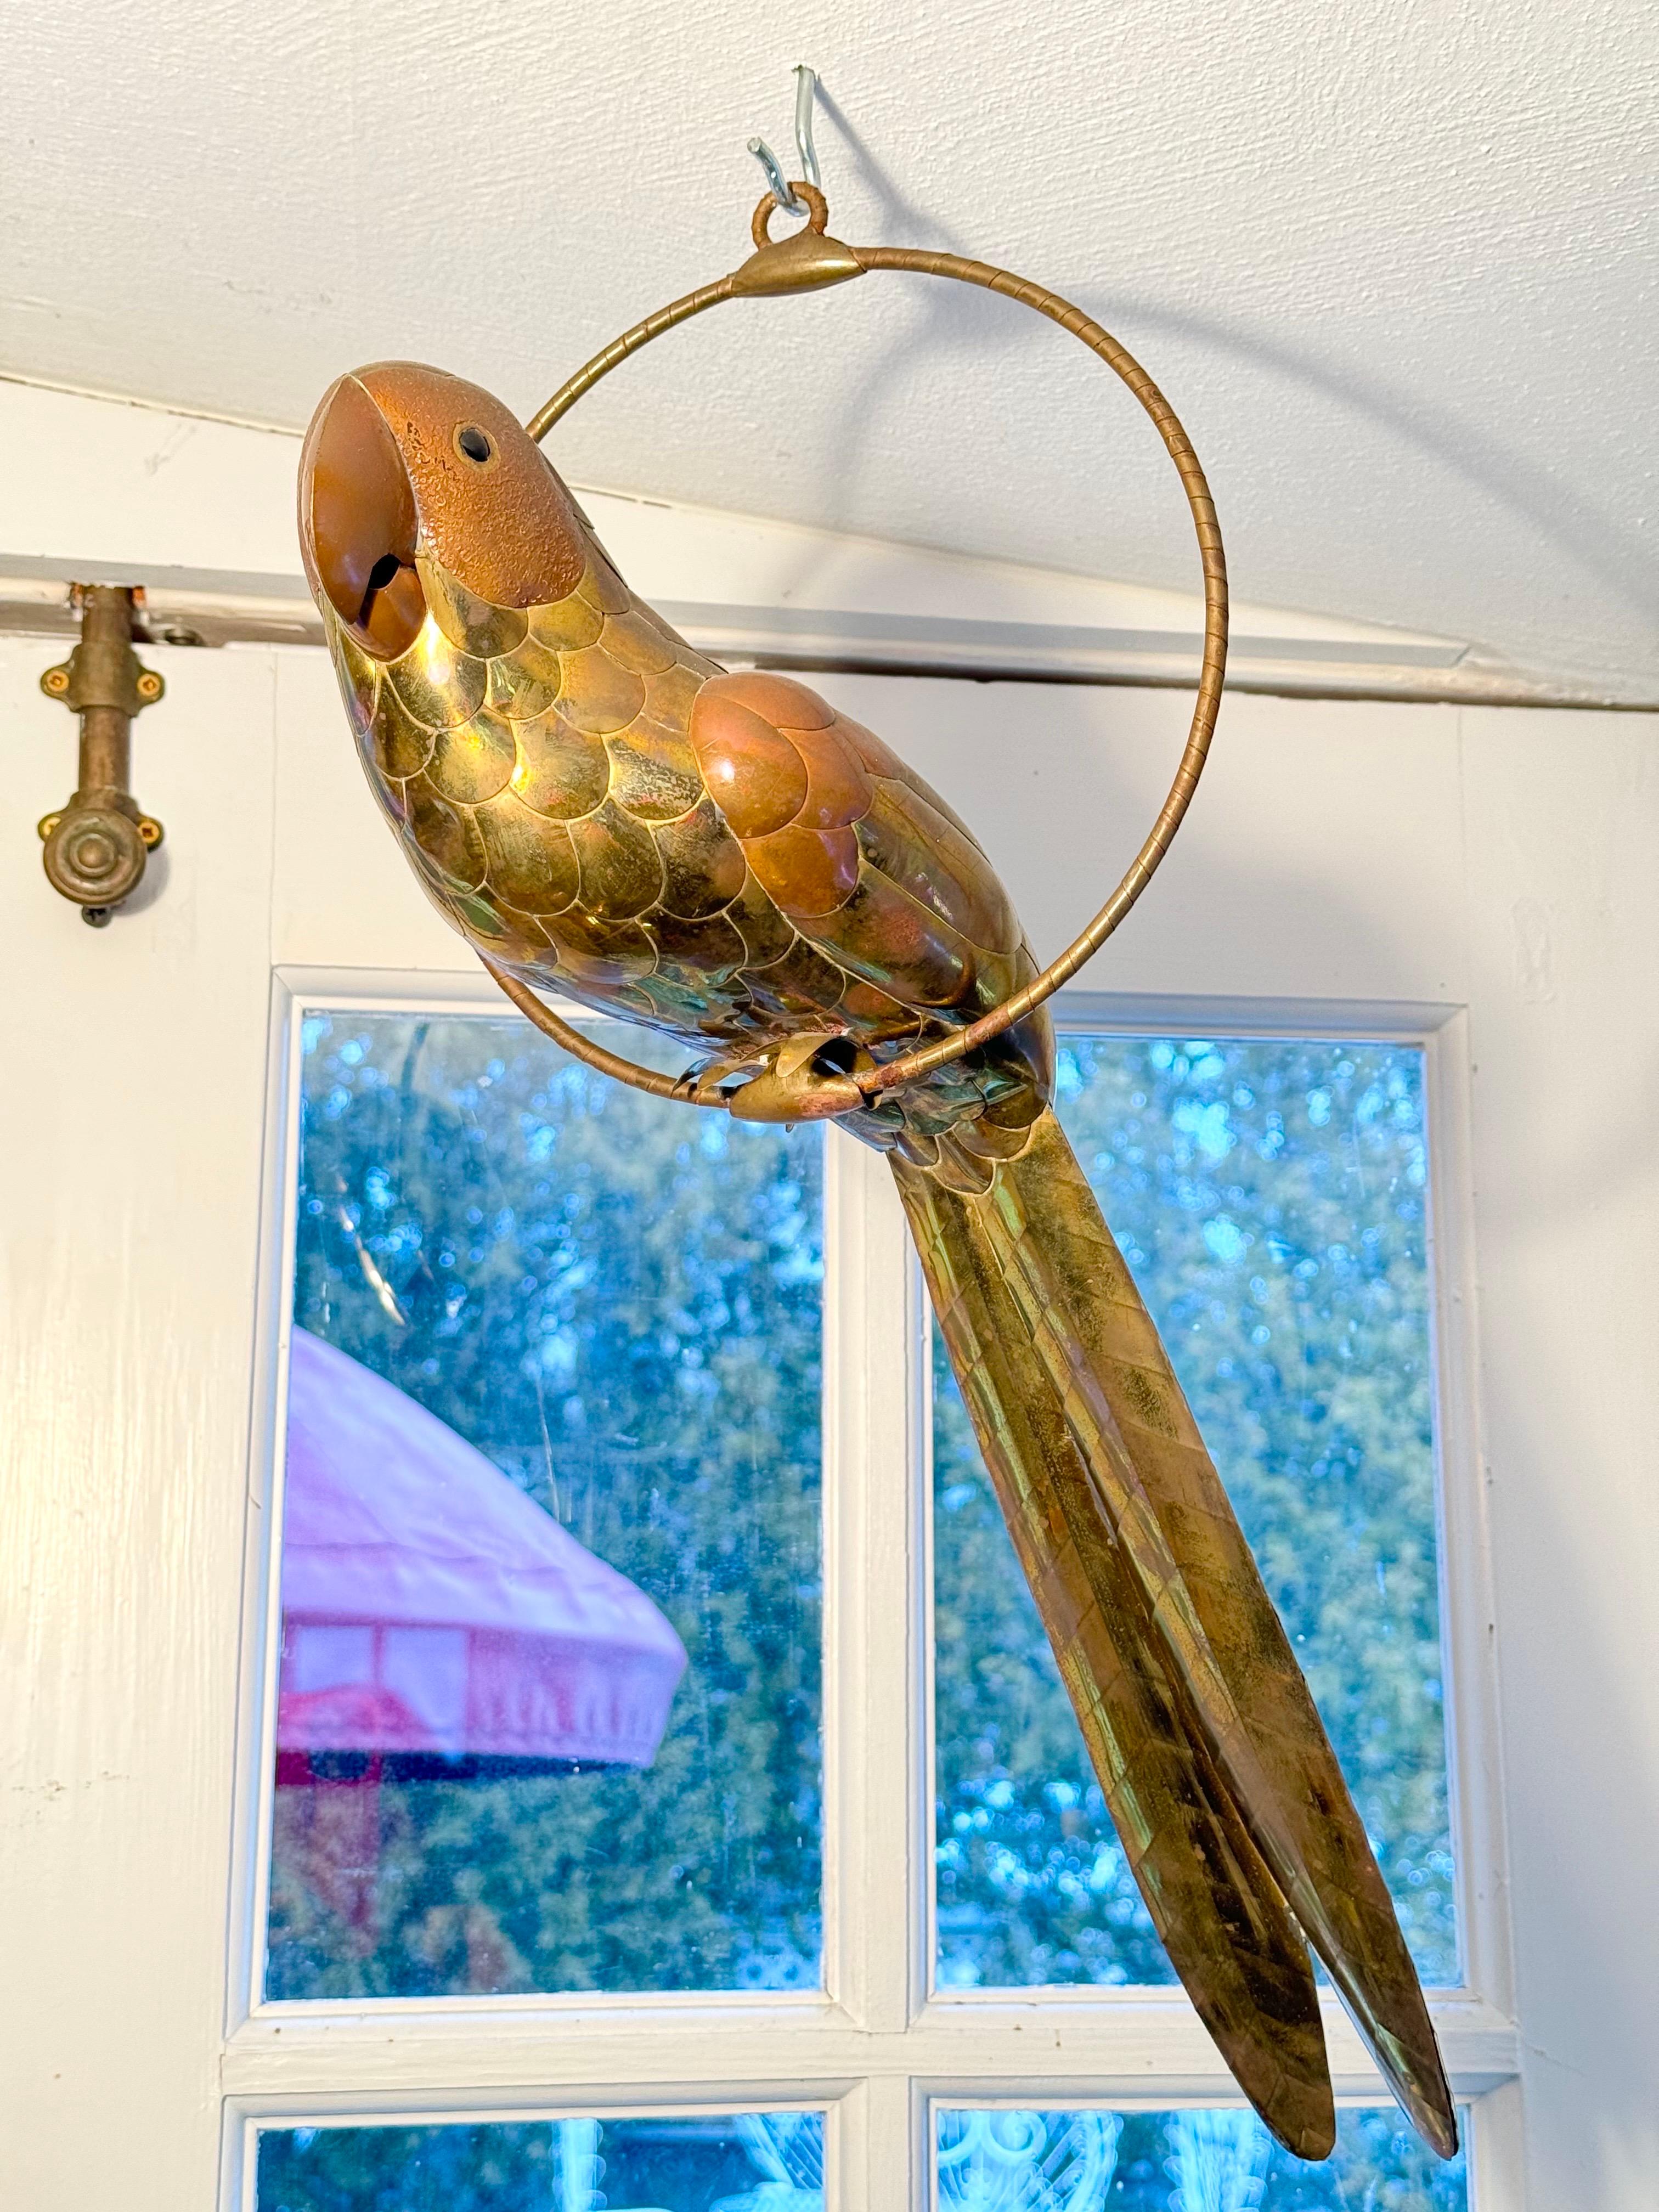 Sergio Bustamante Skulptur eines Papageis aus gemischtem Metall.  Perfekt für dieses Haus in Palm Beach. Wunderschönes, detailliertes Kunstwerk eines gefiederten Freundes aus Messing und Kupfer auf seinem Sitzplatz.